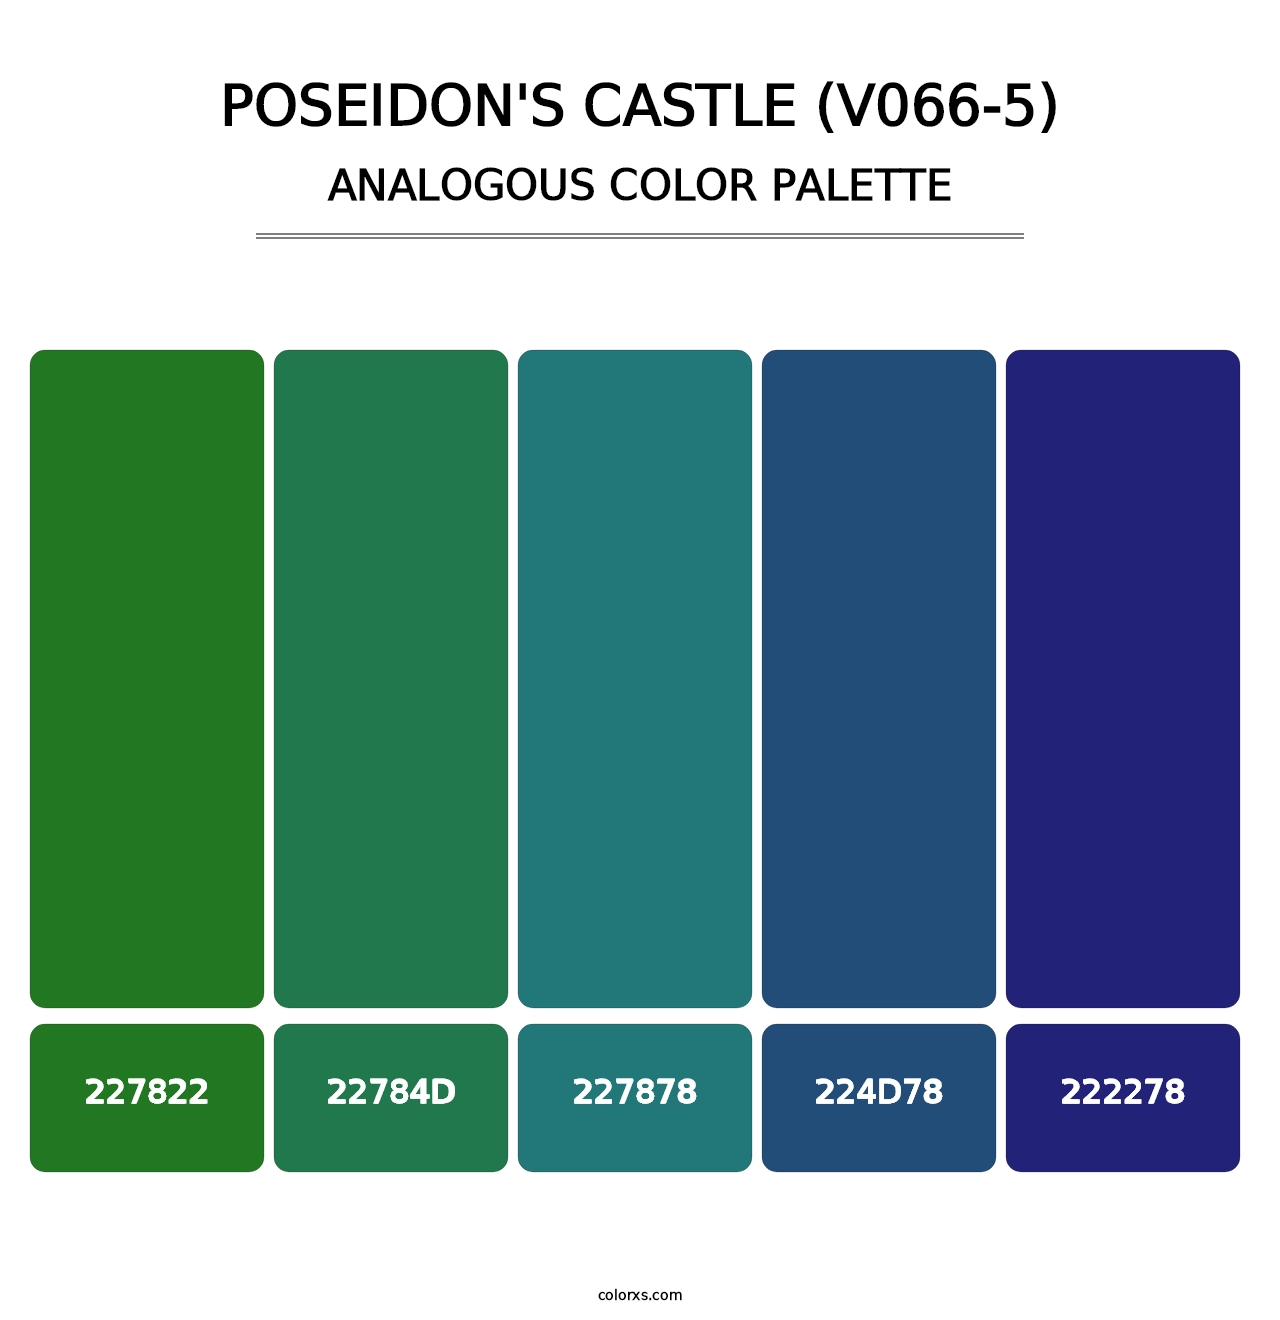 Poseidon's Castle (V066-5) - Analogous Color Palette